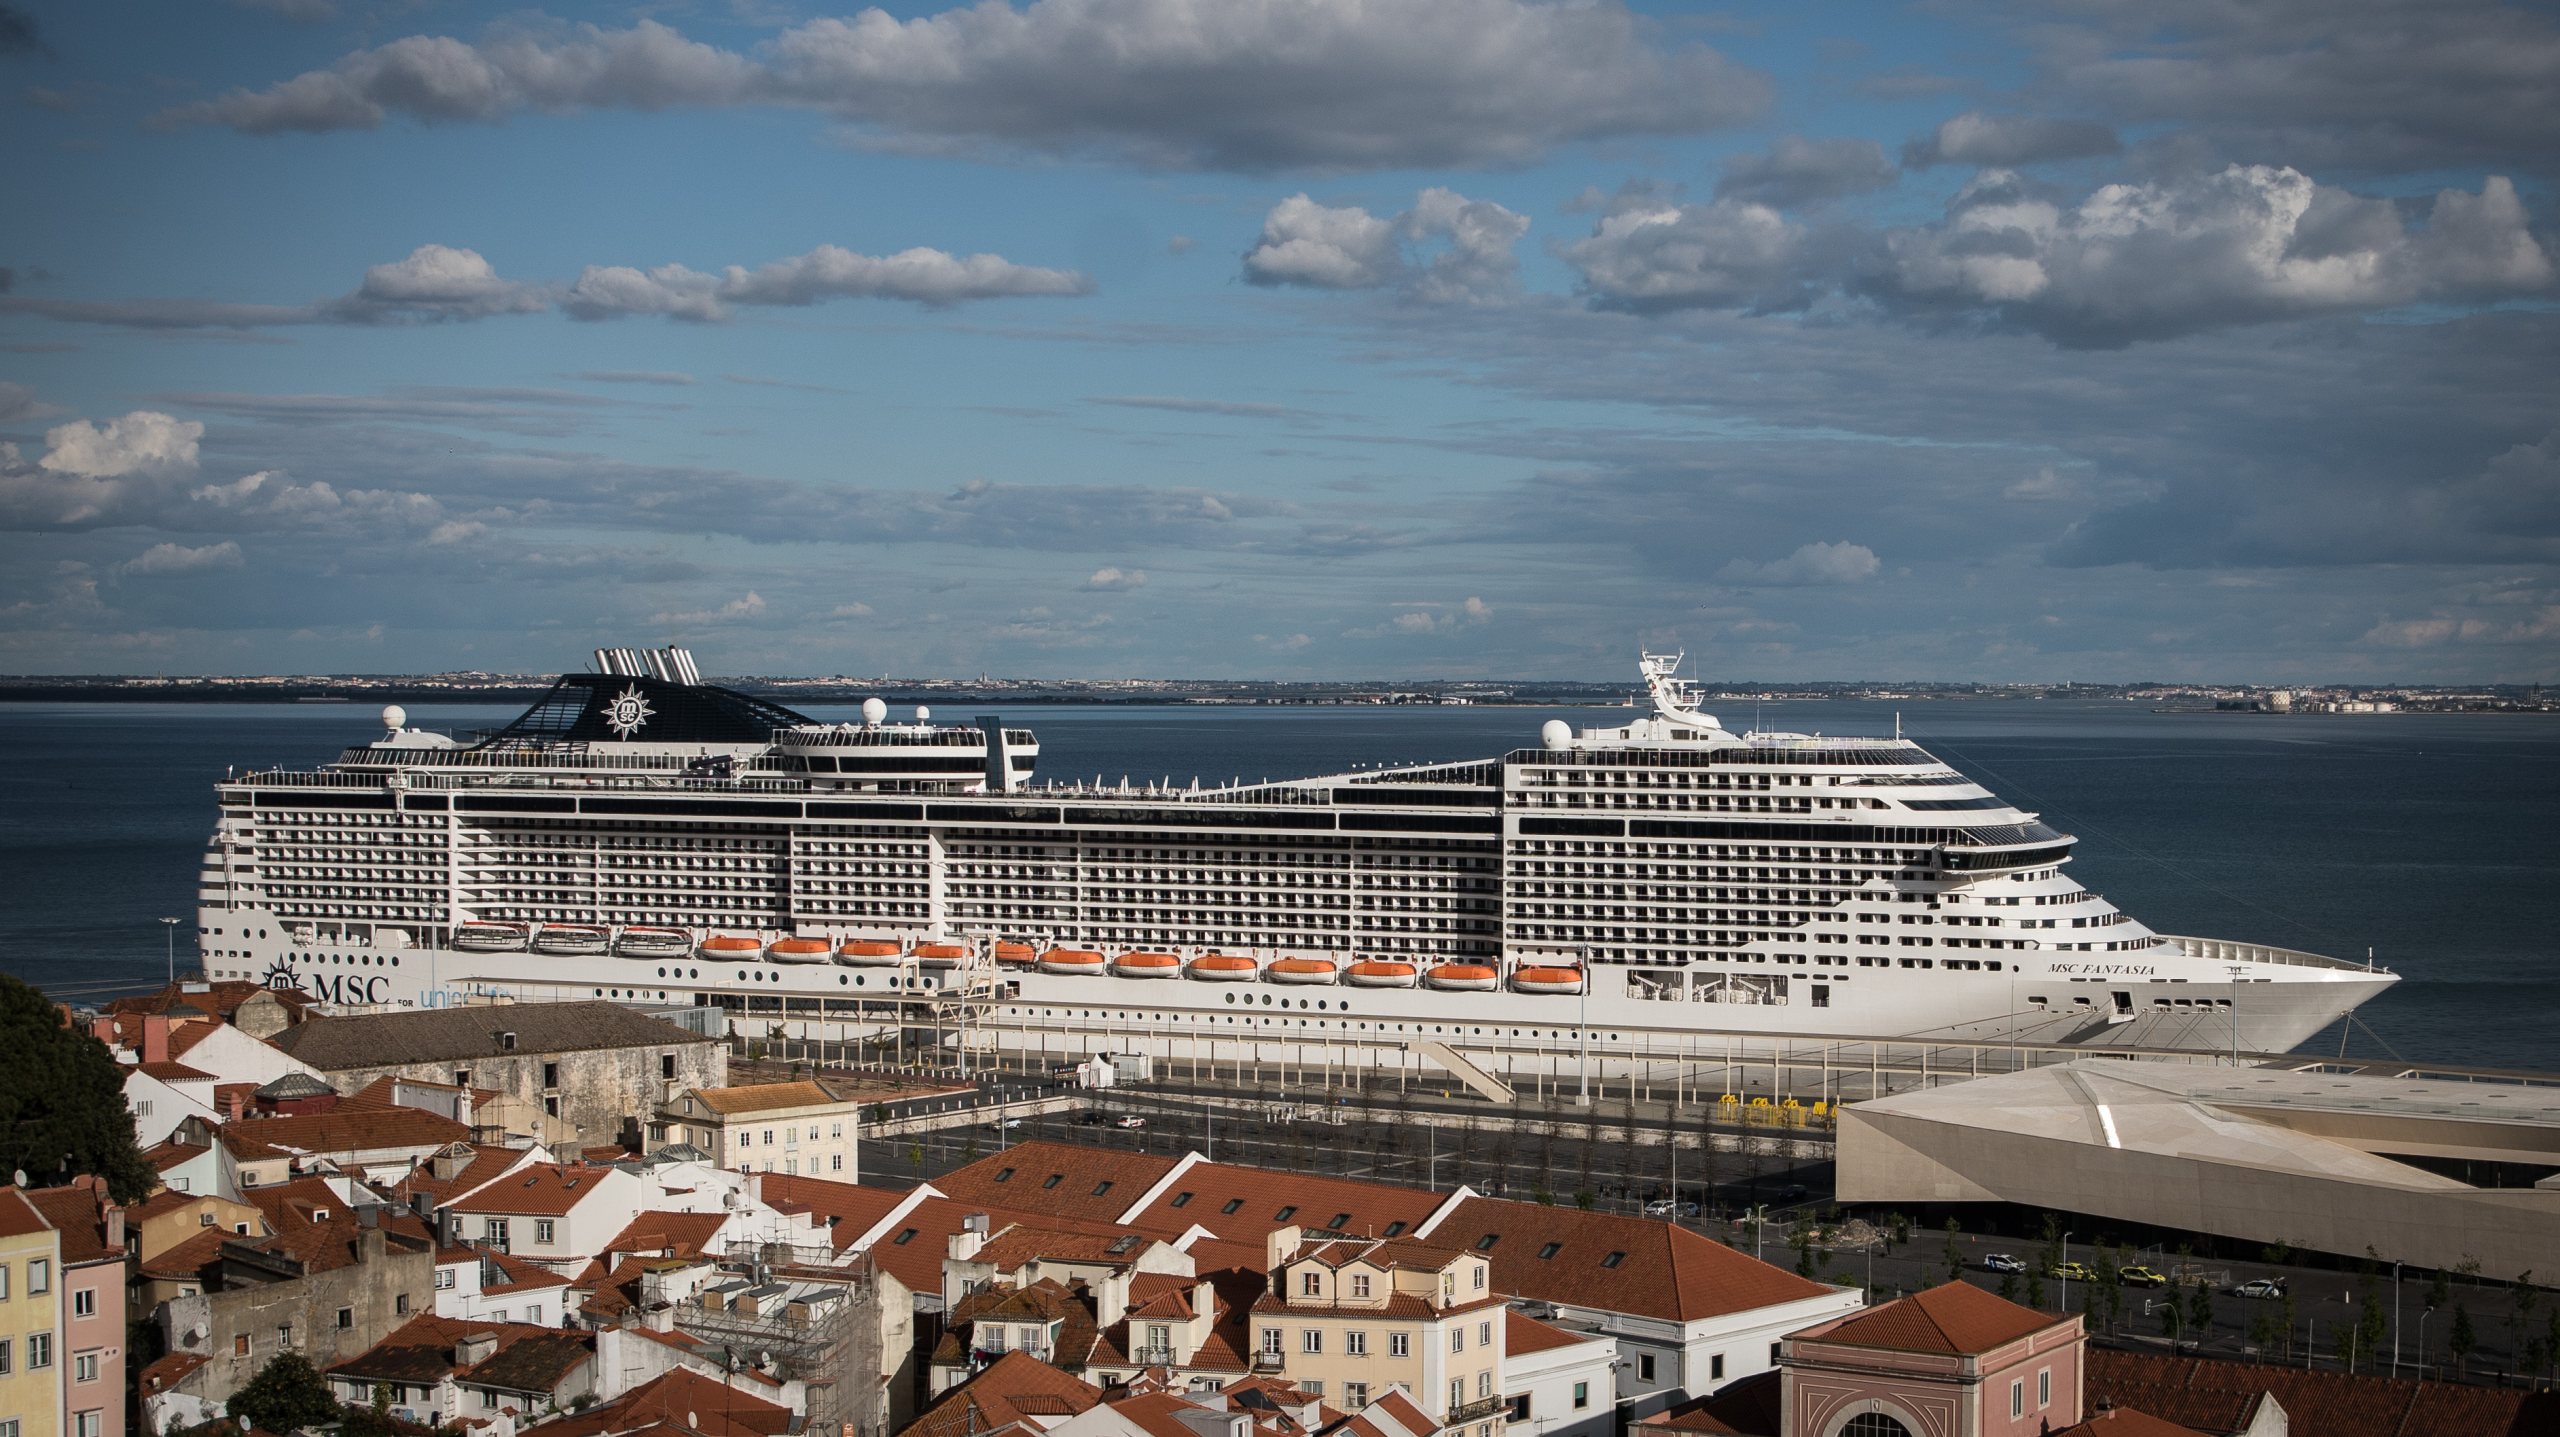 Passageiros de navios cruzeiros não pagam taxa turística de dois euros por noite